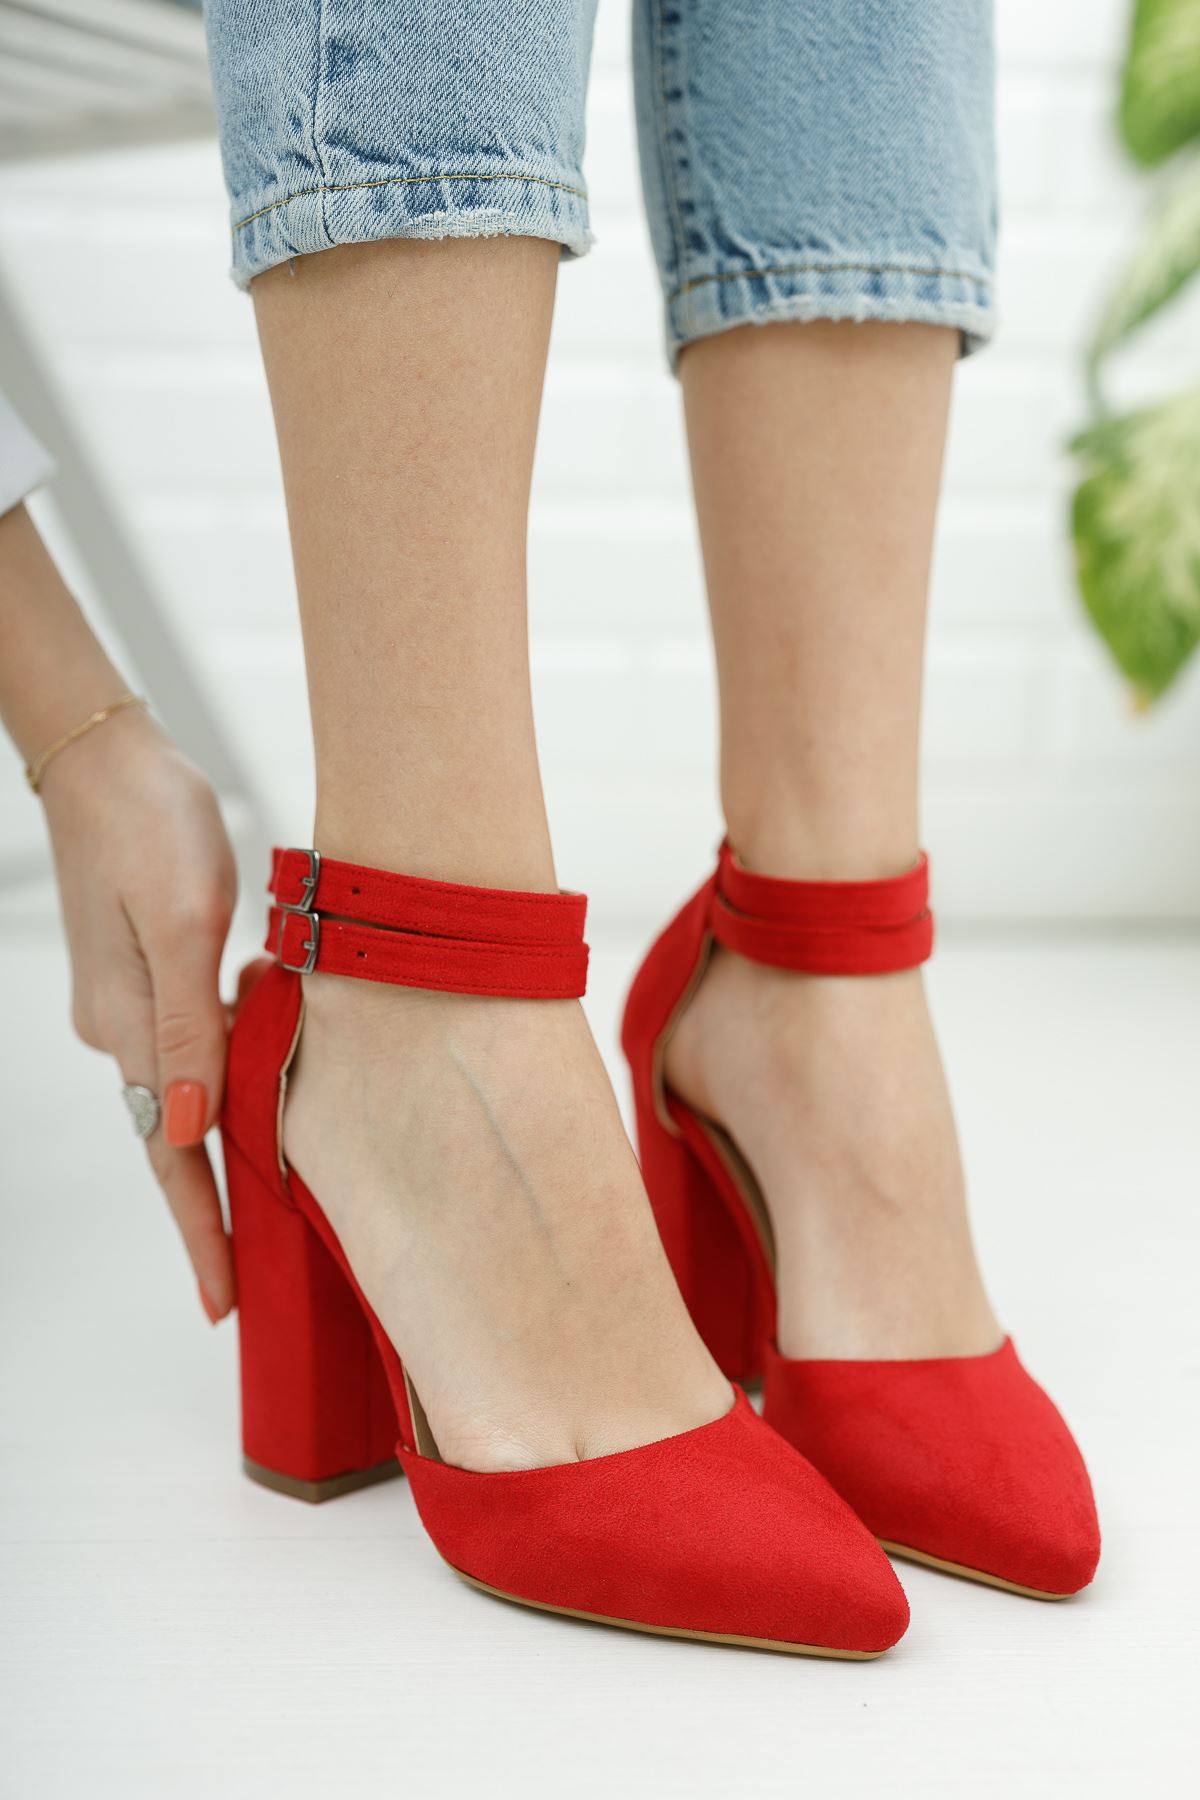 Kadın papun Çift Toka Detay Kalın Topuklu Kırmızı Süet Ayakkabı